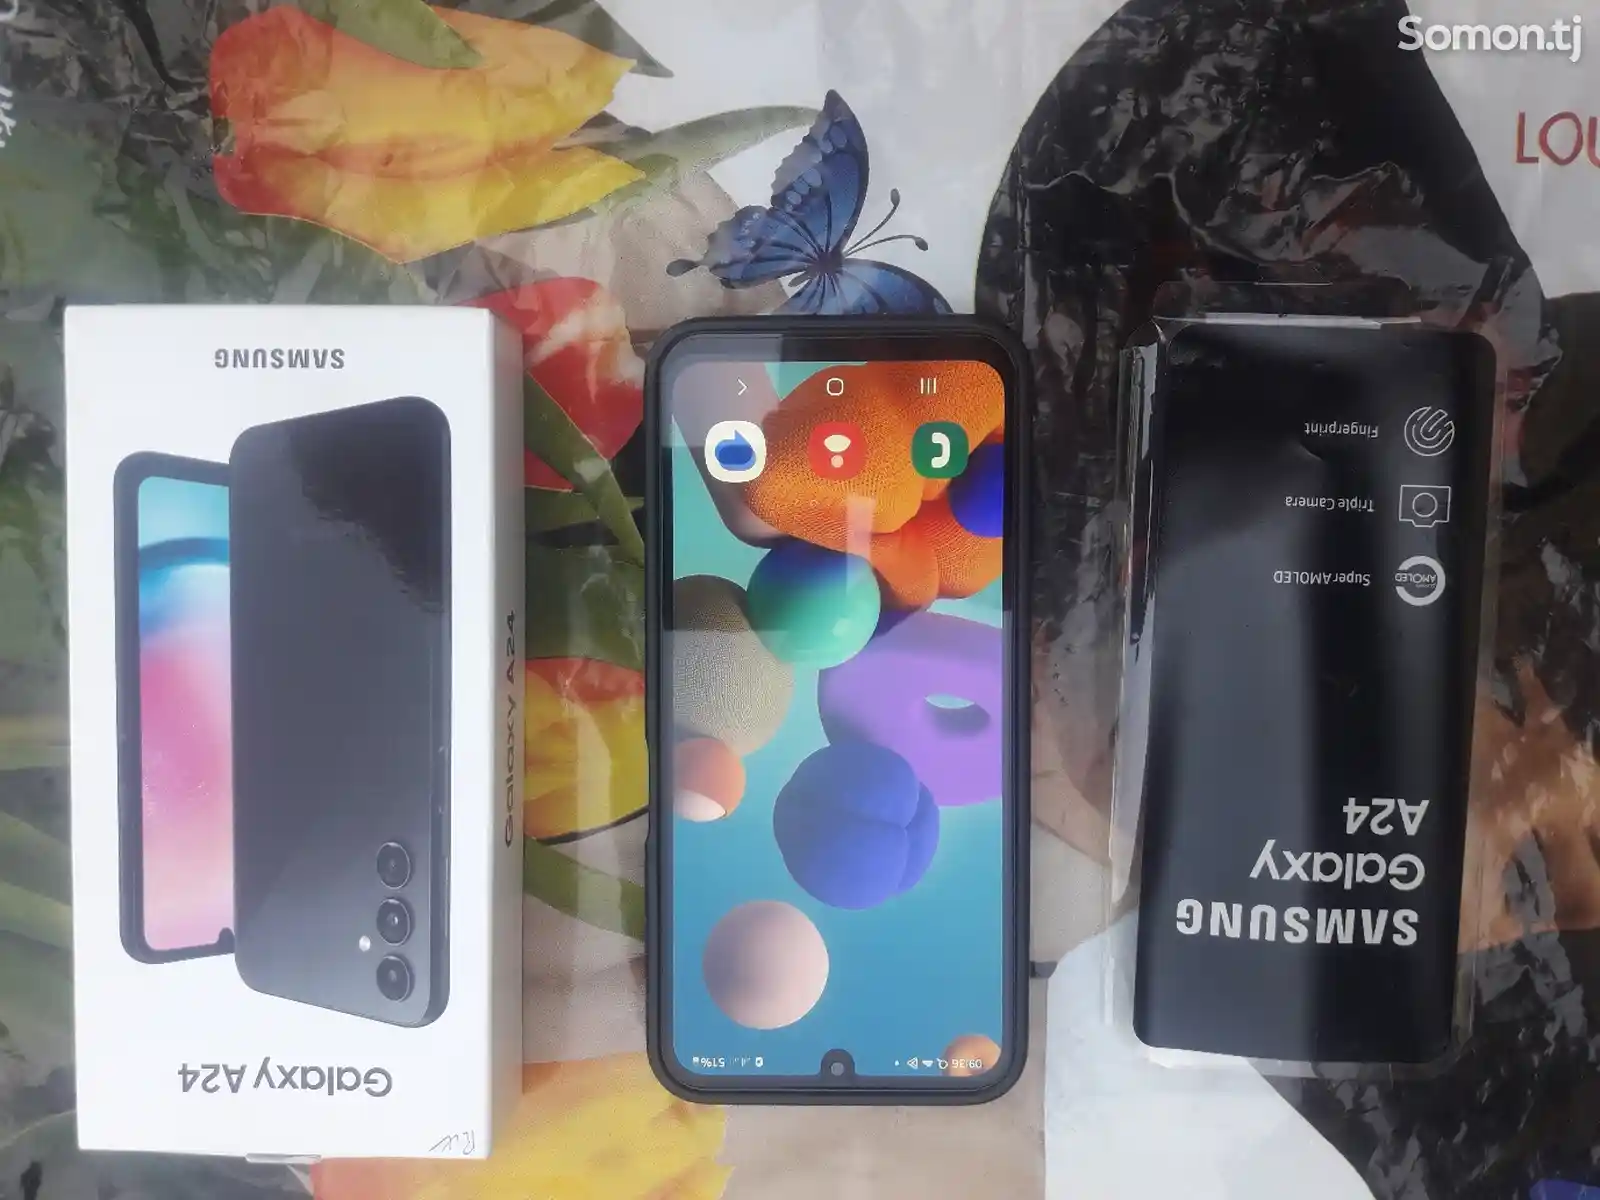 Samsung Galaxy A24-3